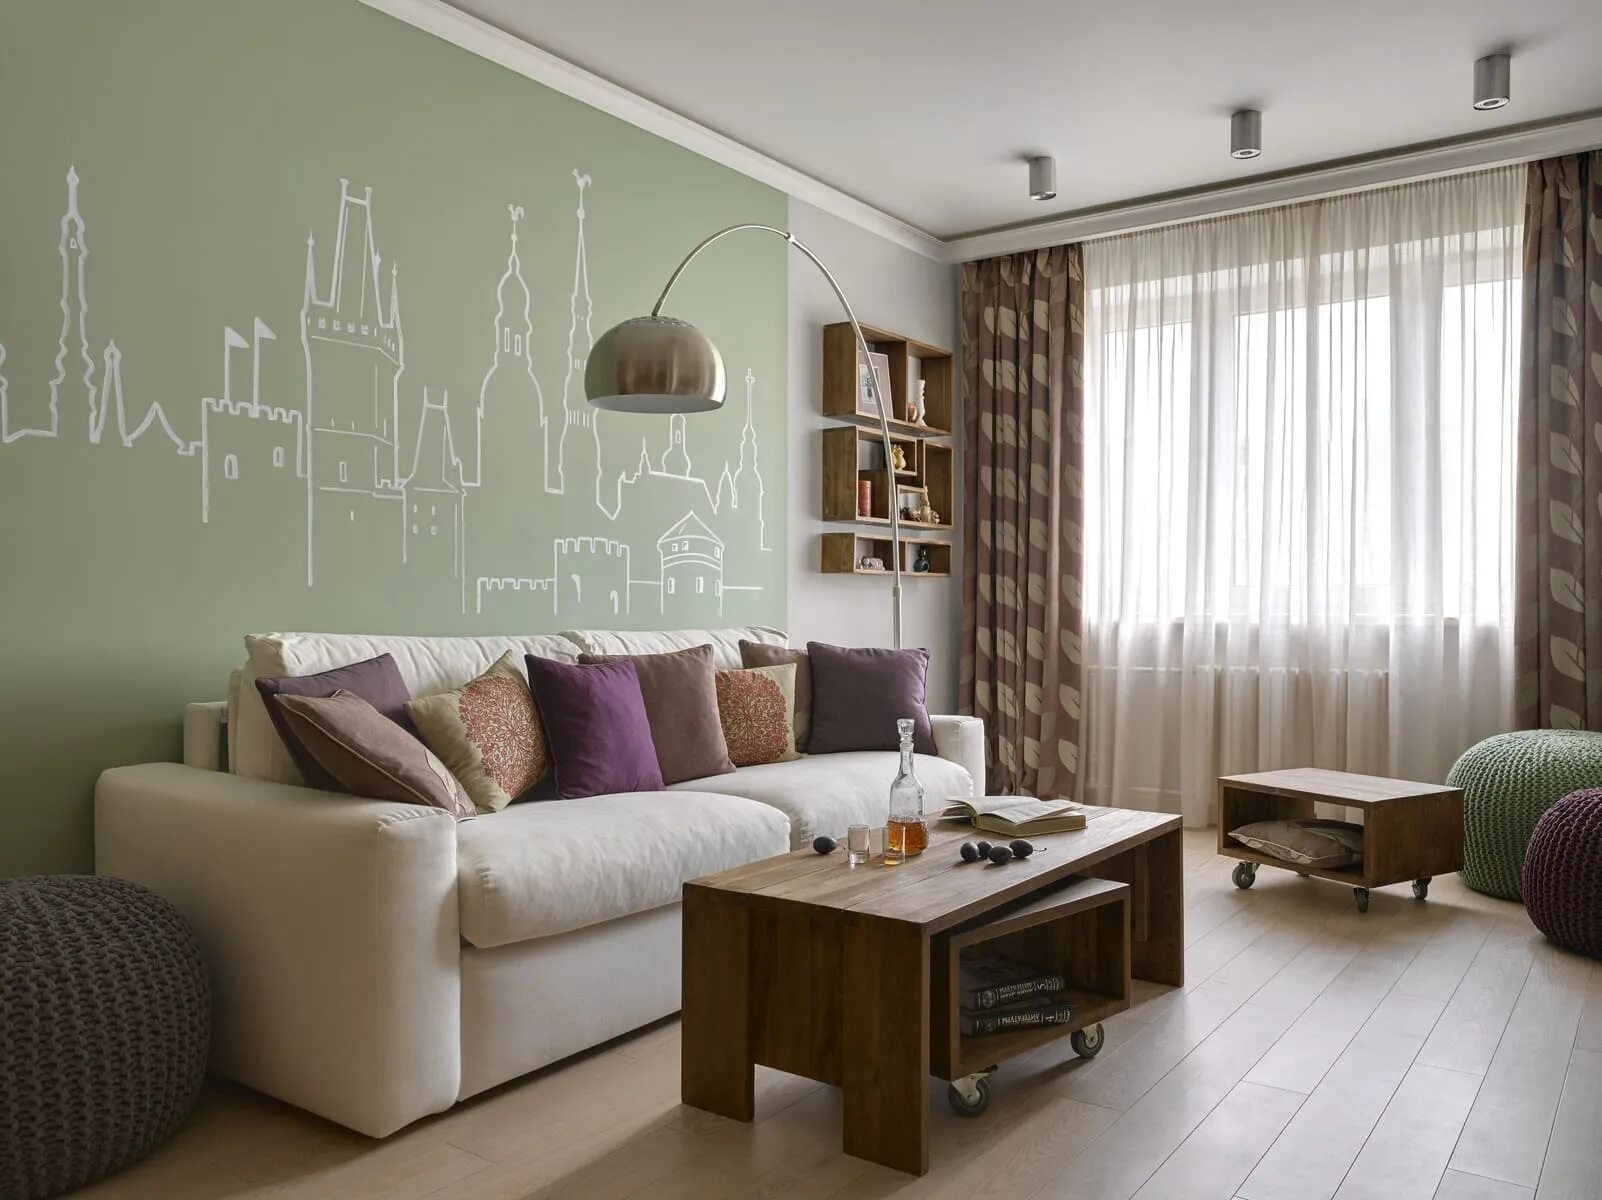 Стена с диваном в зале. Акцентная стена в гостиной. Зеленые стены в гостиной. Гостиная в оливковых тонах. Оливковый цвет стен в интерьере.